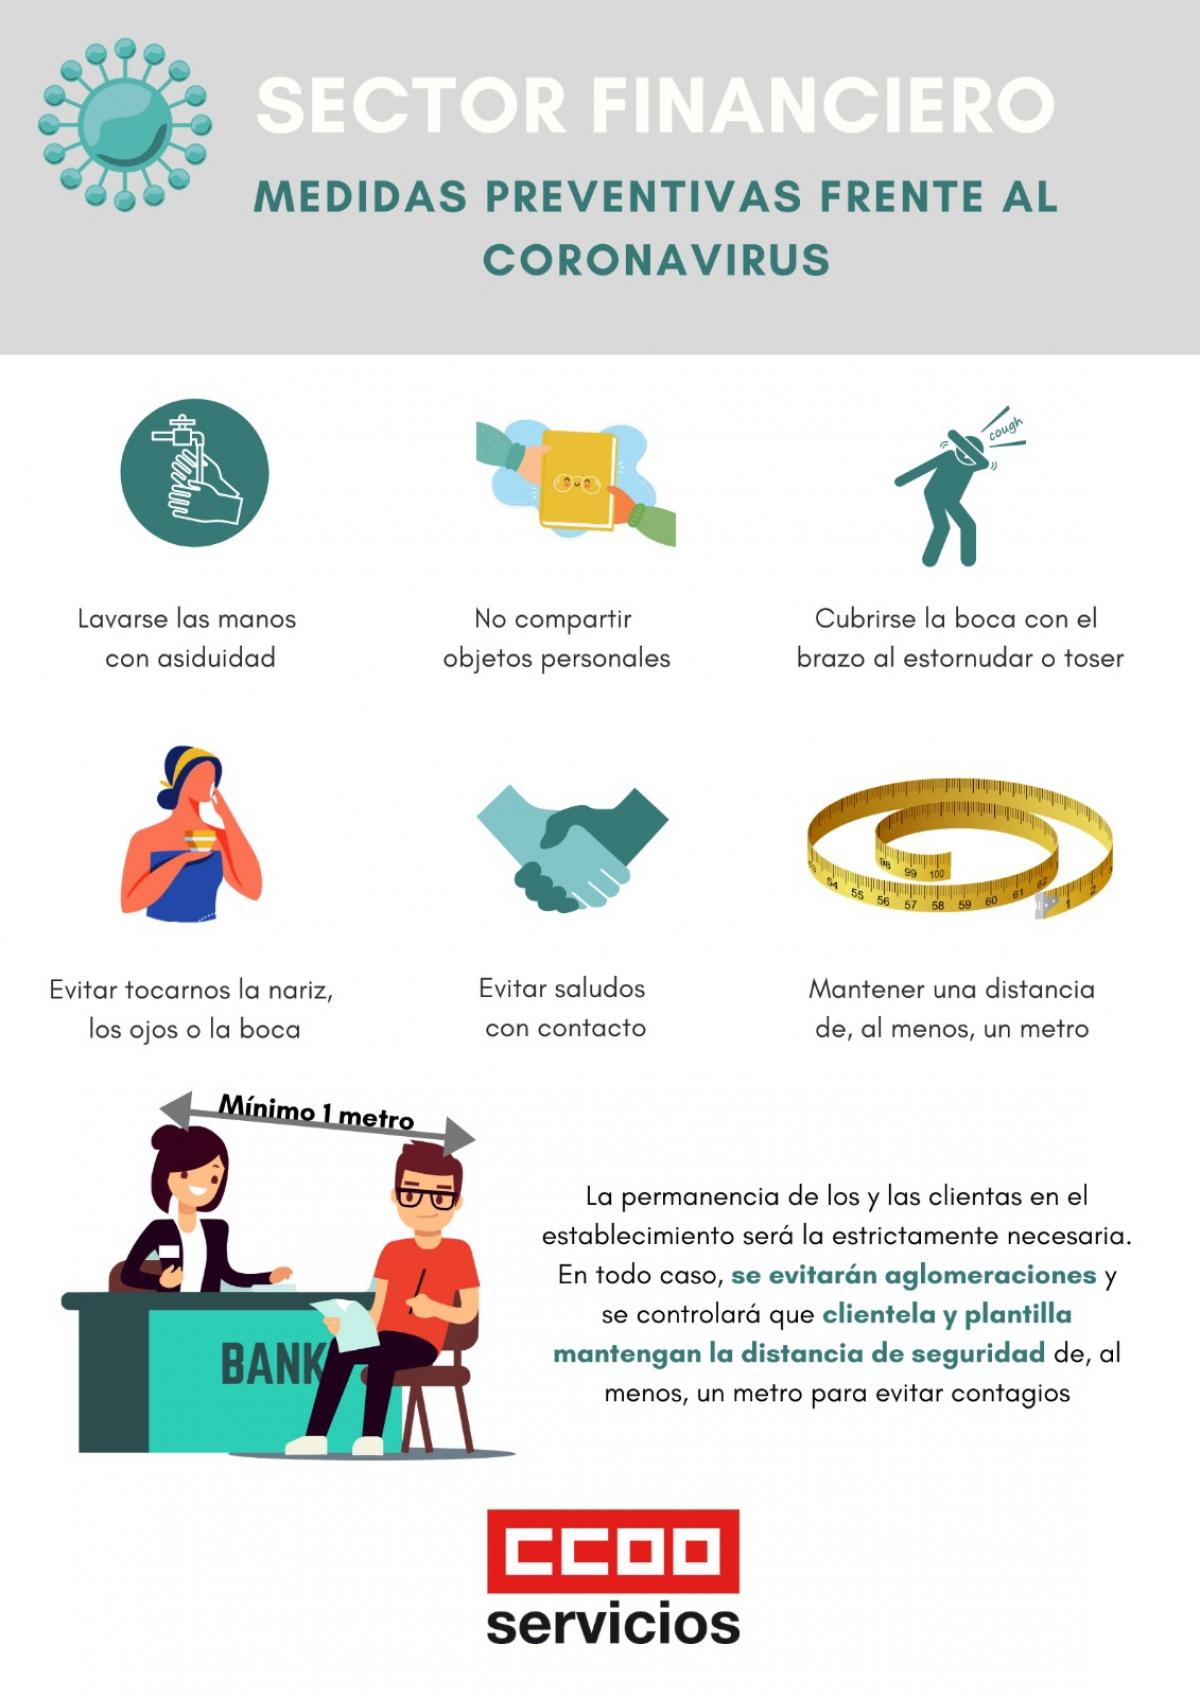 Medidas preventivas frente al coronavirus en el sector financiero